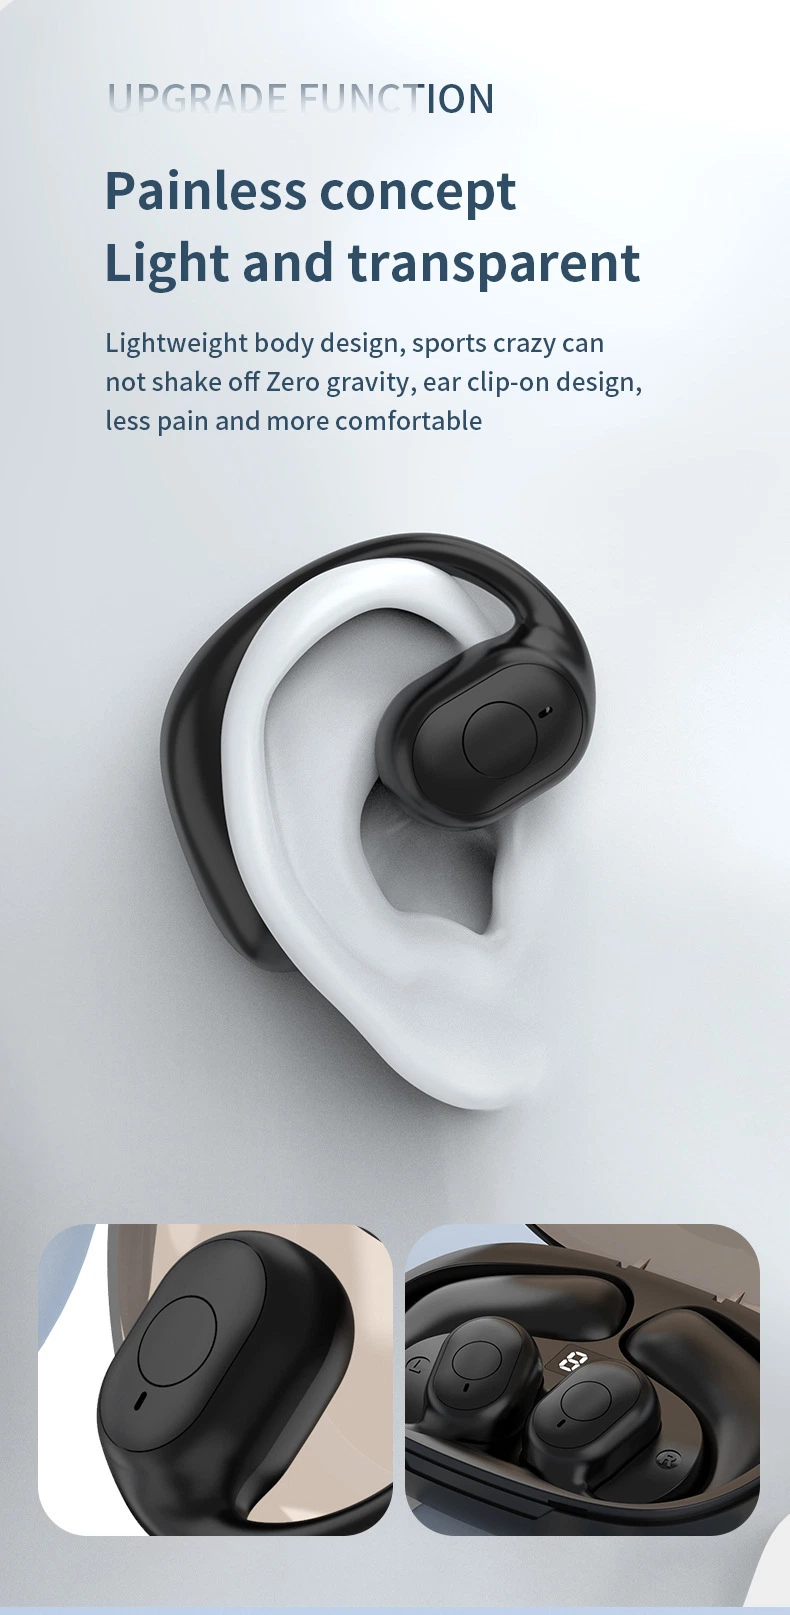 2023 مقبس سماعة رأس مع خطاف الأذن Bluetooth® جديد مع نظام التوجيه عبر الإنترنت (OWS) ومقابس أذن لاسلكية Pro Low Latency Noise Canceling Earpart سماعتَي الأذن Earphone